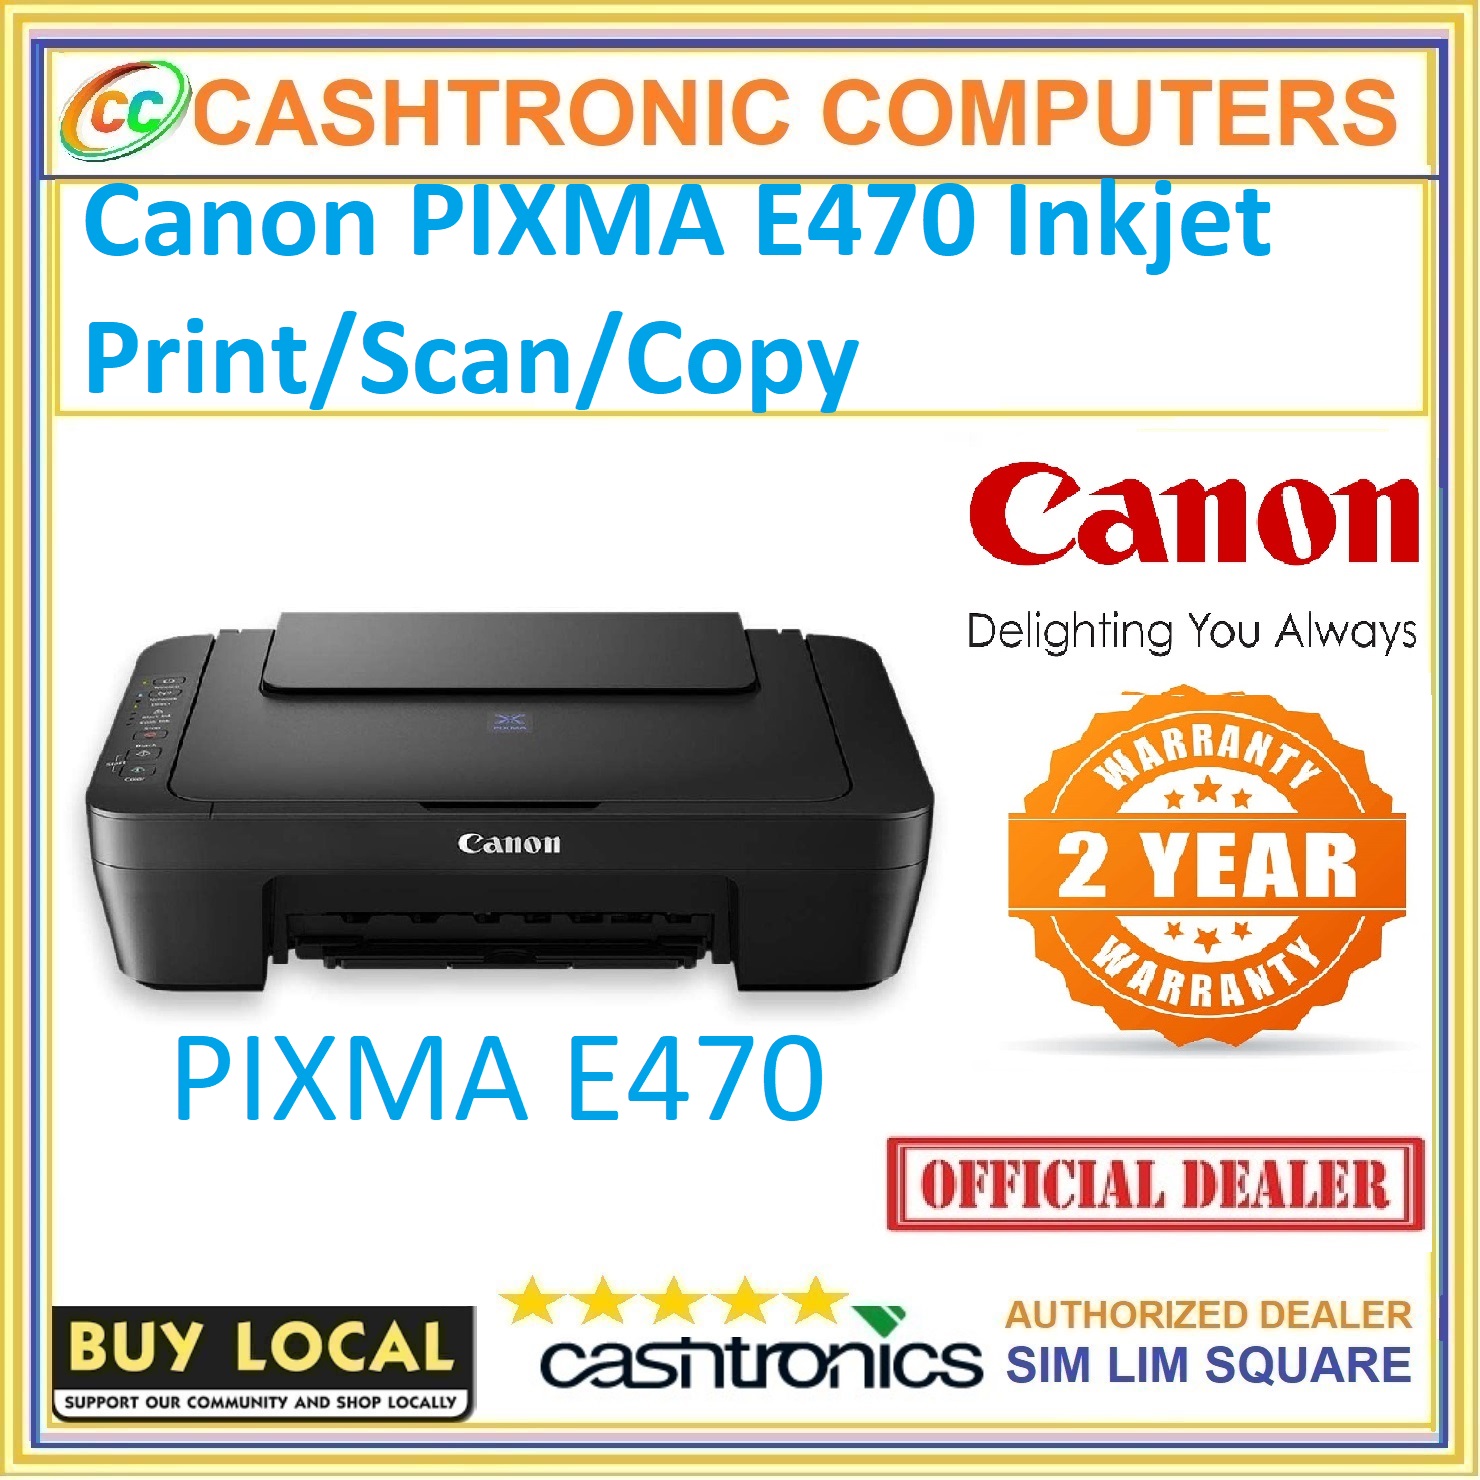 Printer e470 ink canon Canon :